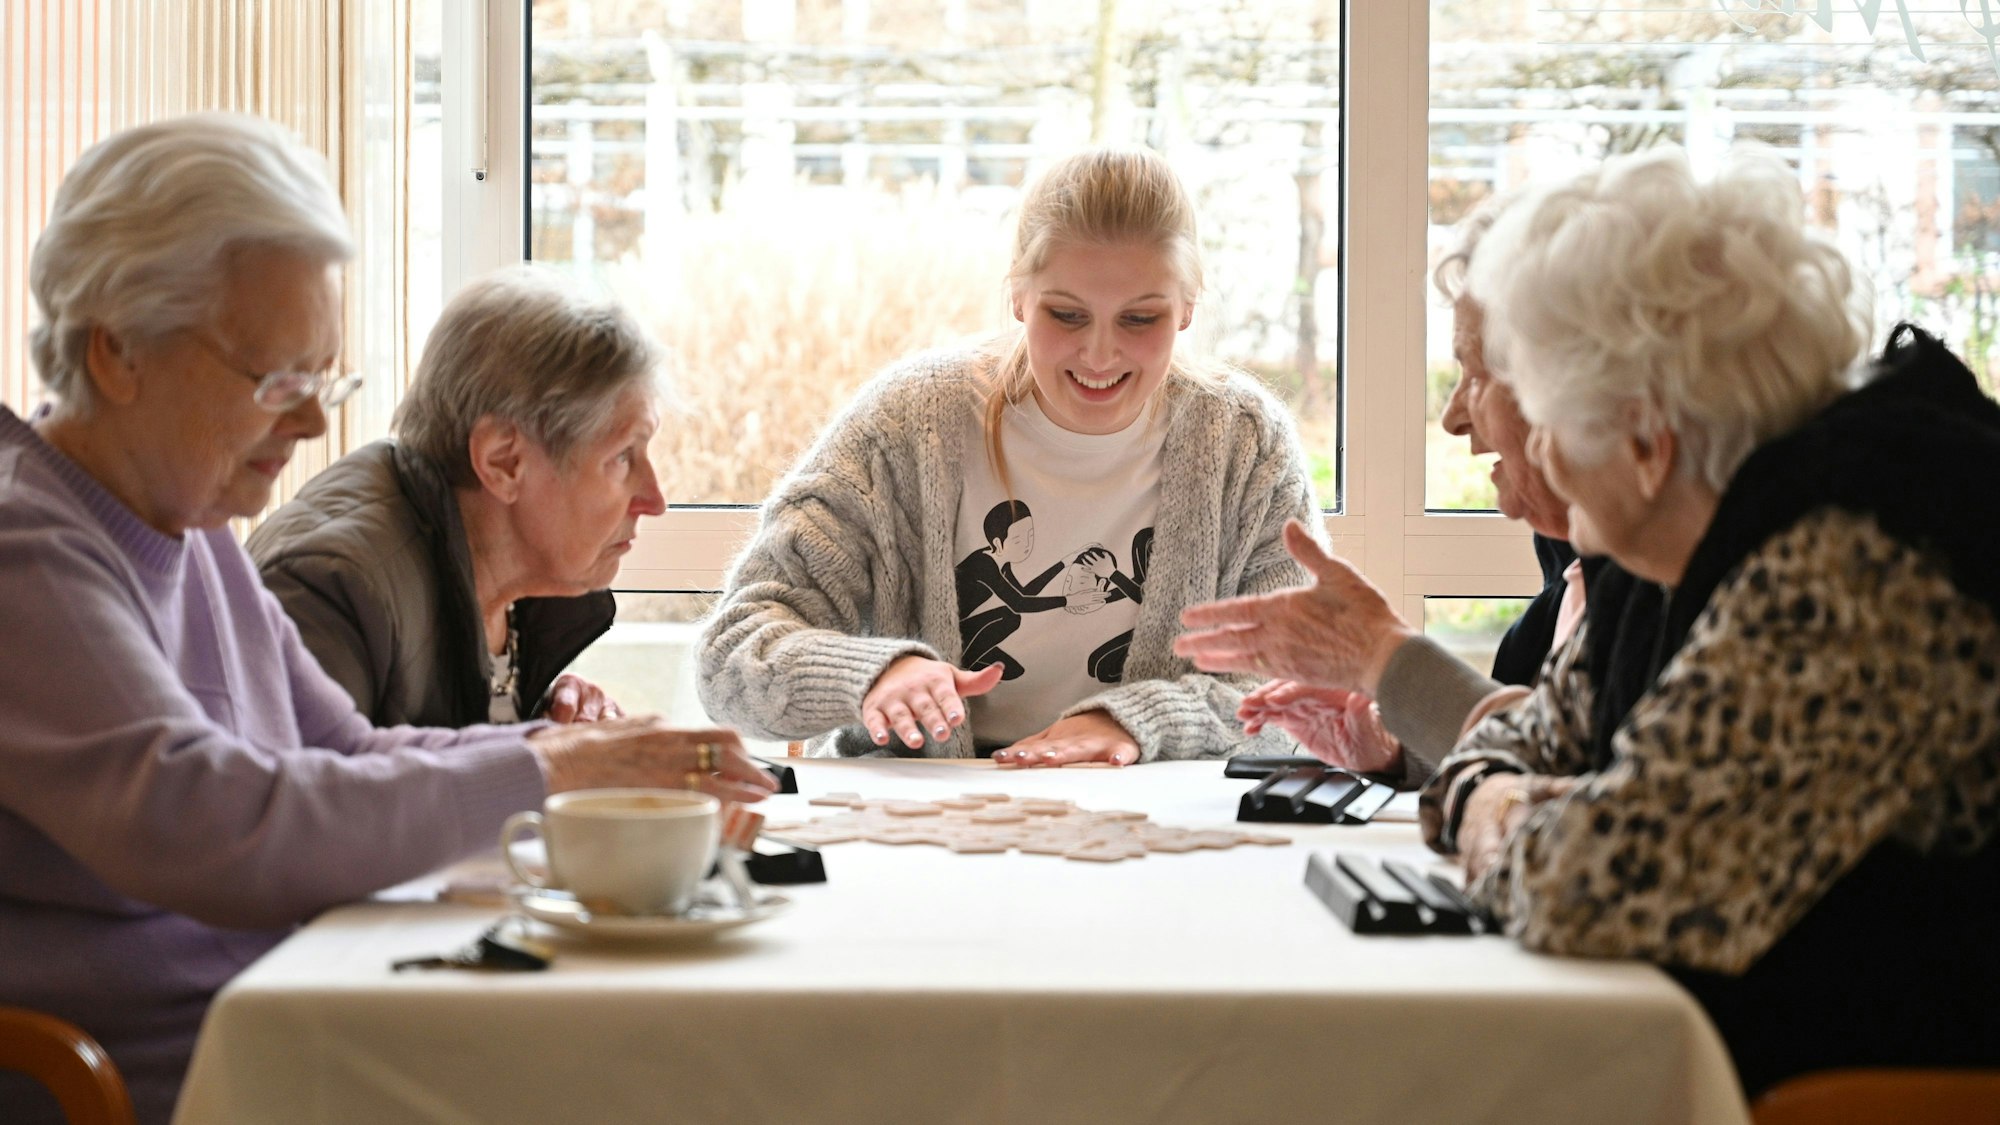 Eine junge Frau sitzt mit vier Bewohnerinnen einer Seniorenresidenz am Tisch und spielt mit ihnen ein Gesellschaftsspiel.